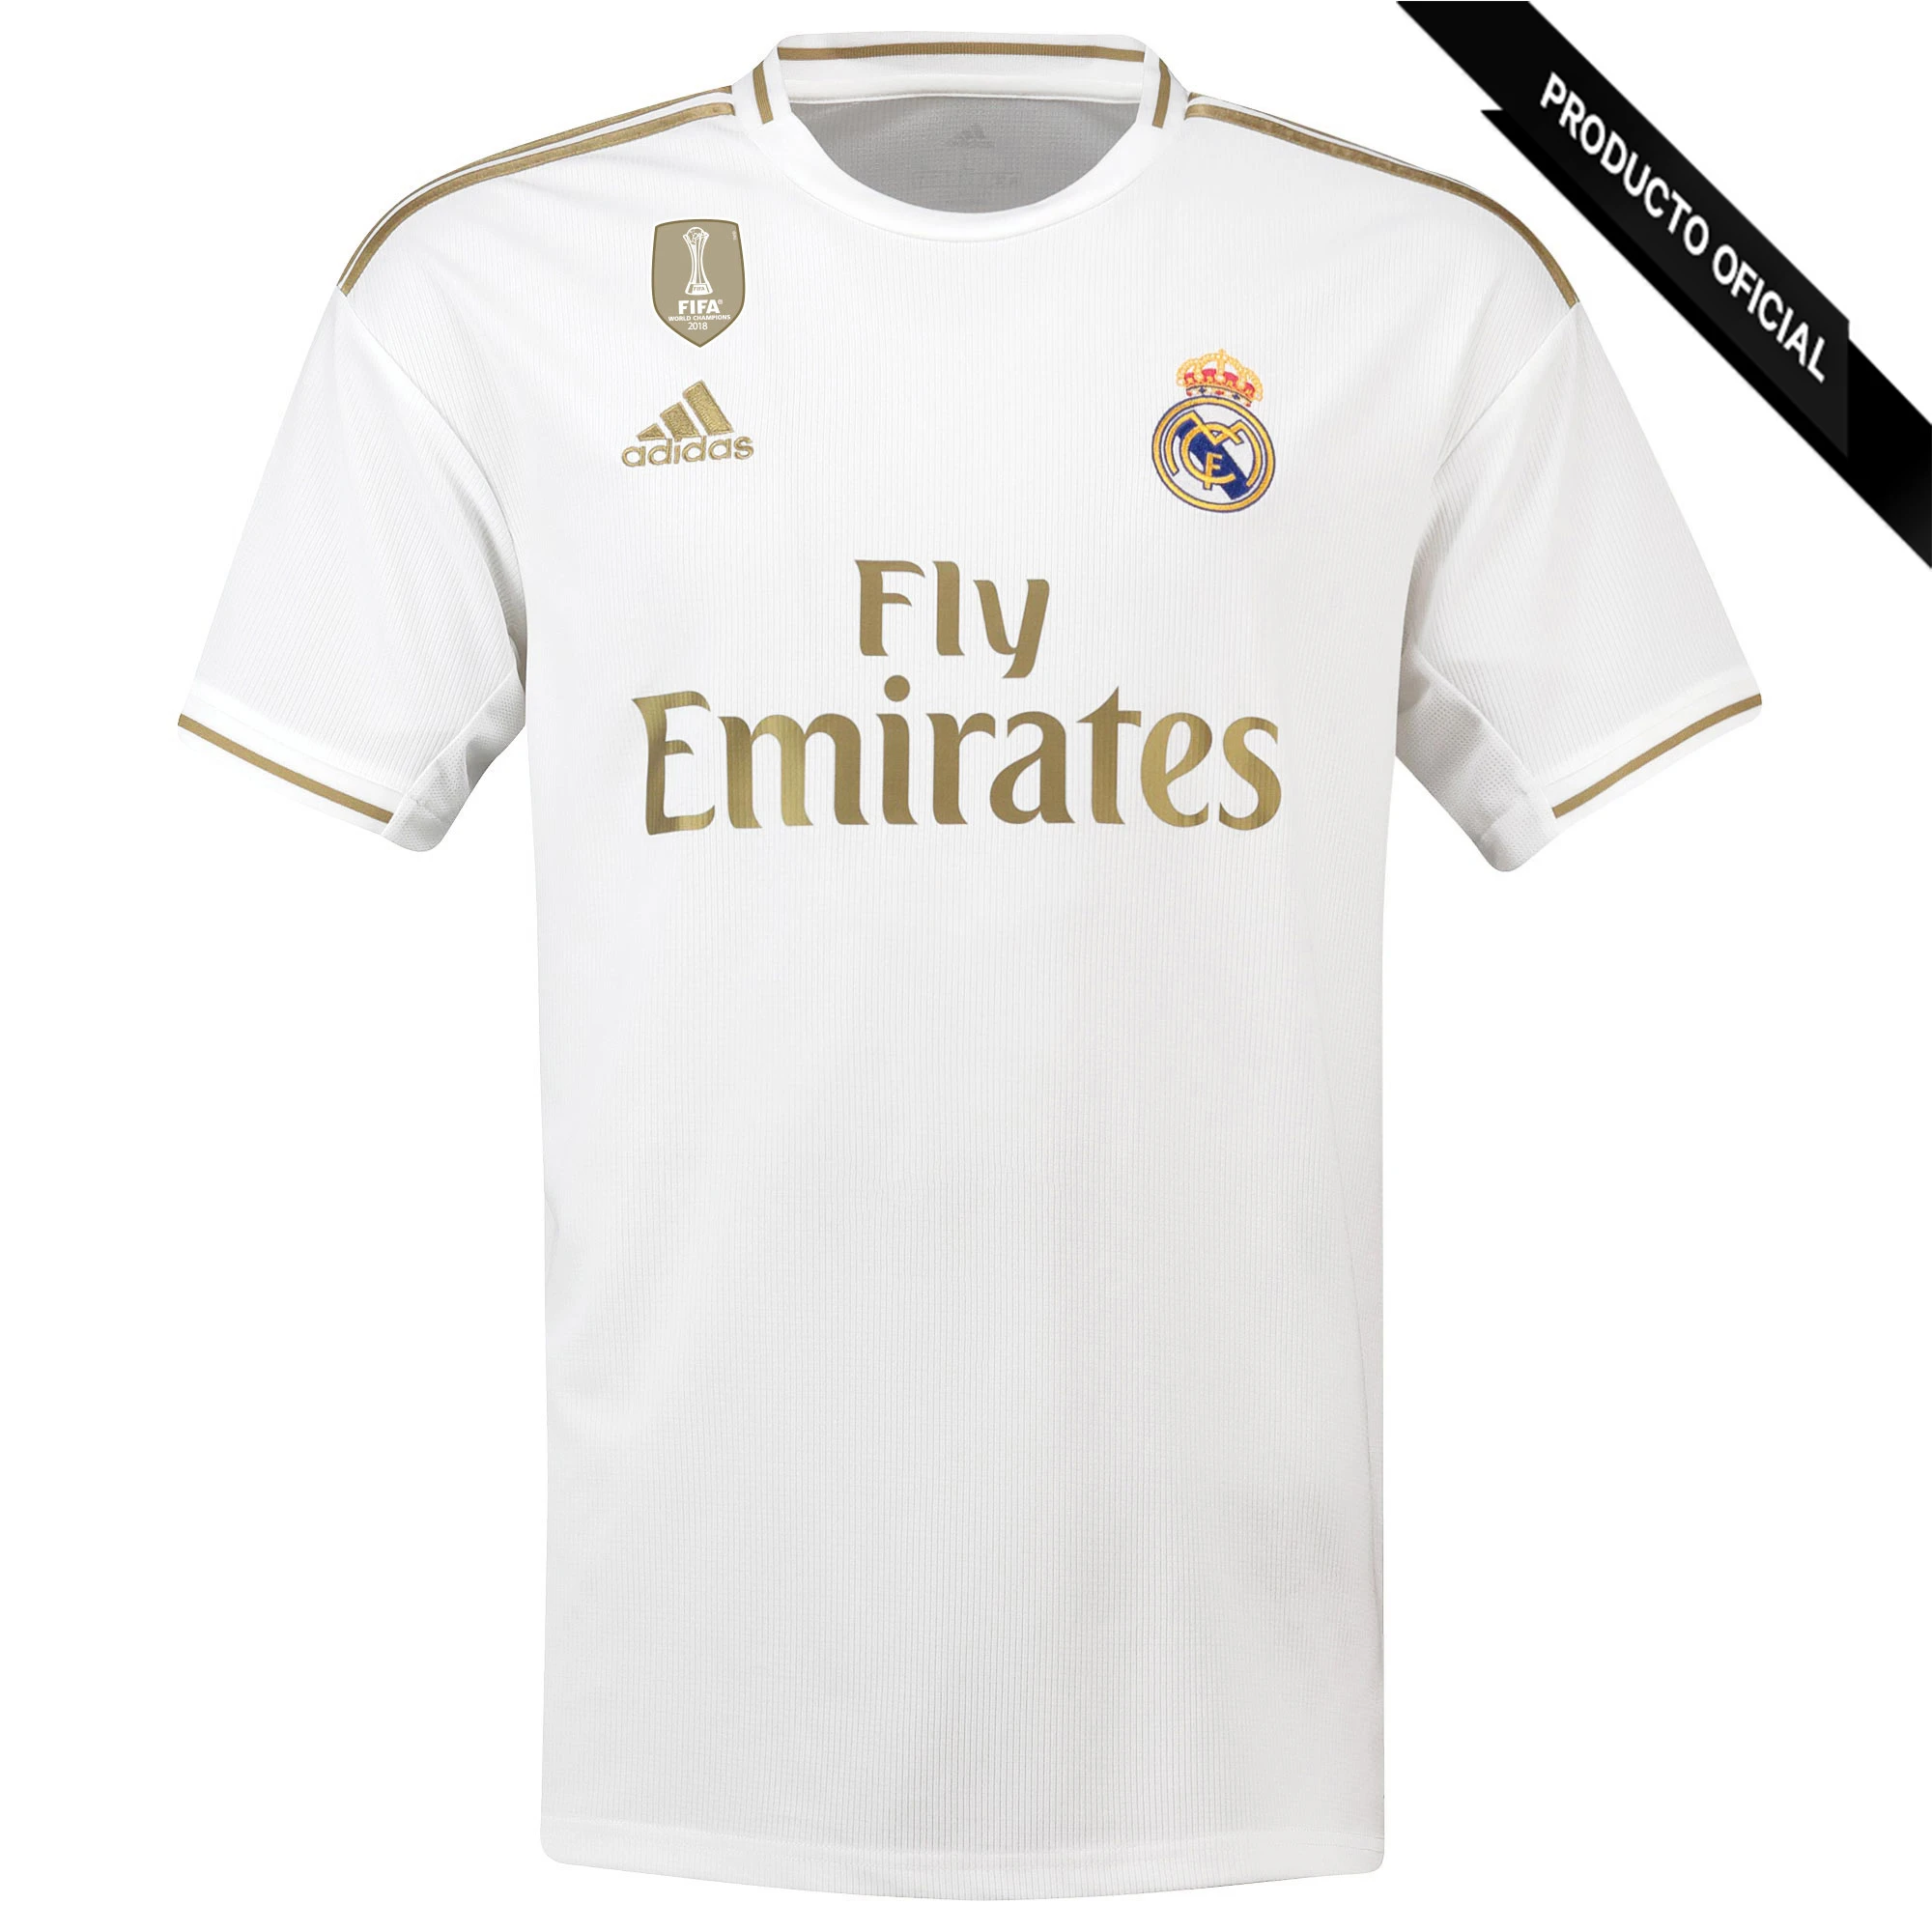 cebra prosa Componer ADIDAS Camiseta de la 1ª equipación del Real Madrid 2019 20 Color Blanco y  Oro Dorsal Hazard Futbol Ropa de Marca Oficial|Camisetas| - AliExpress